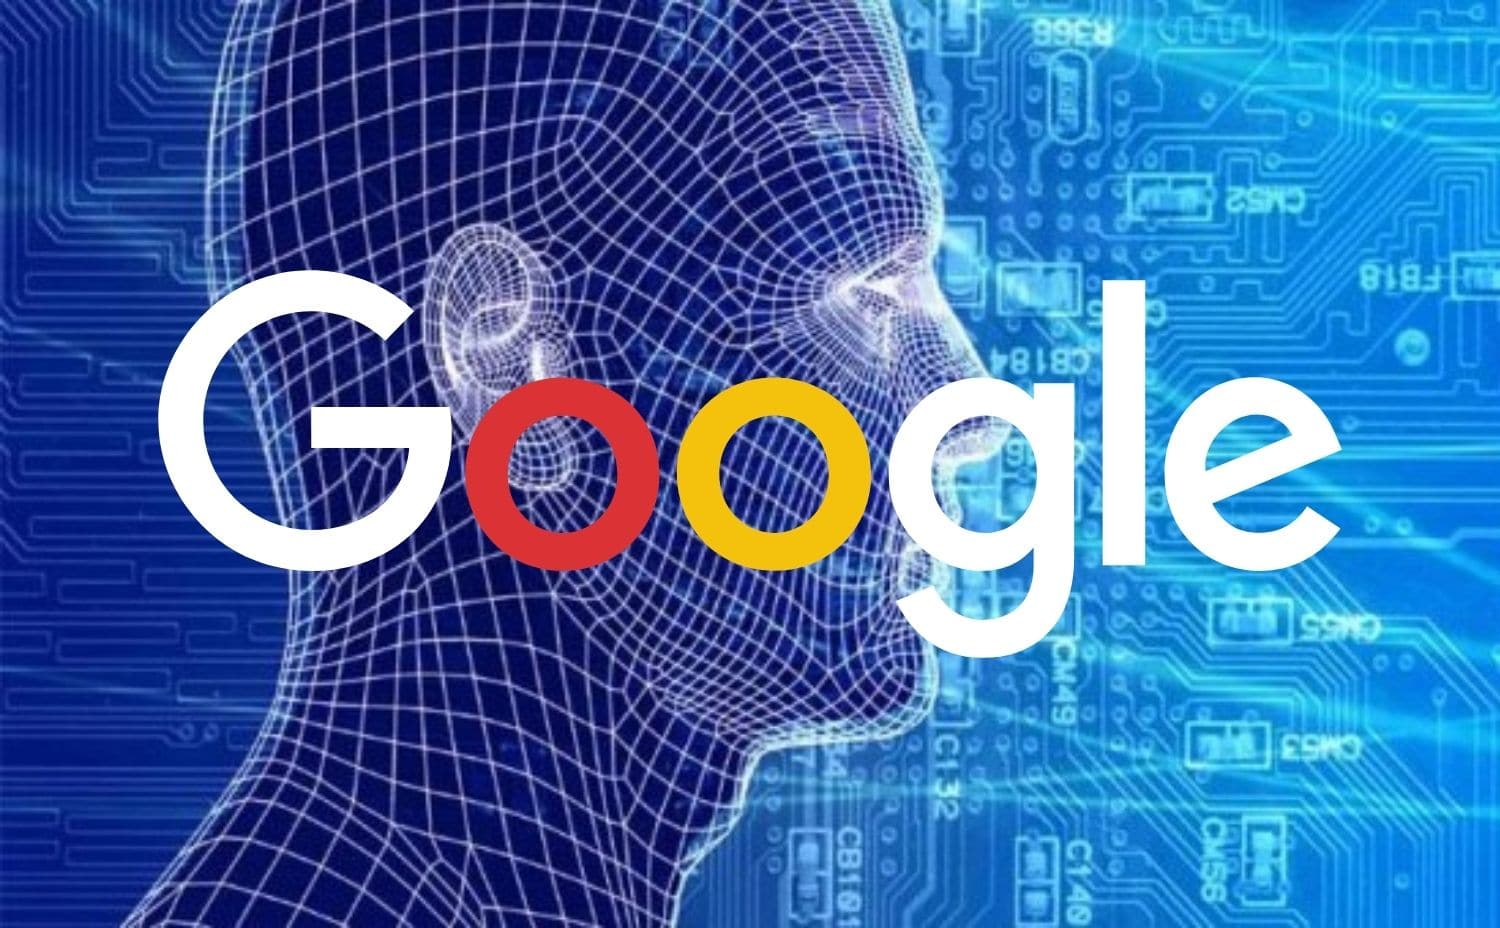 جوجل تحدث طفرة فى مجال الذكاء الاصطناعي بشراكتها مع Qualcomm